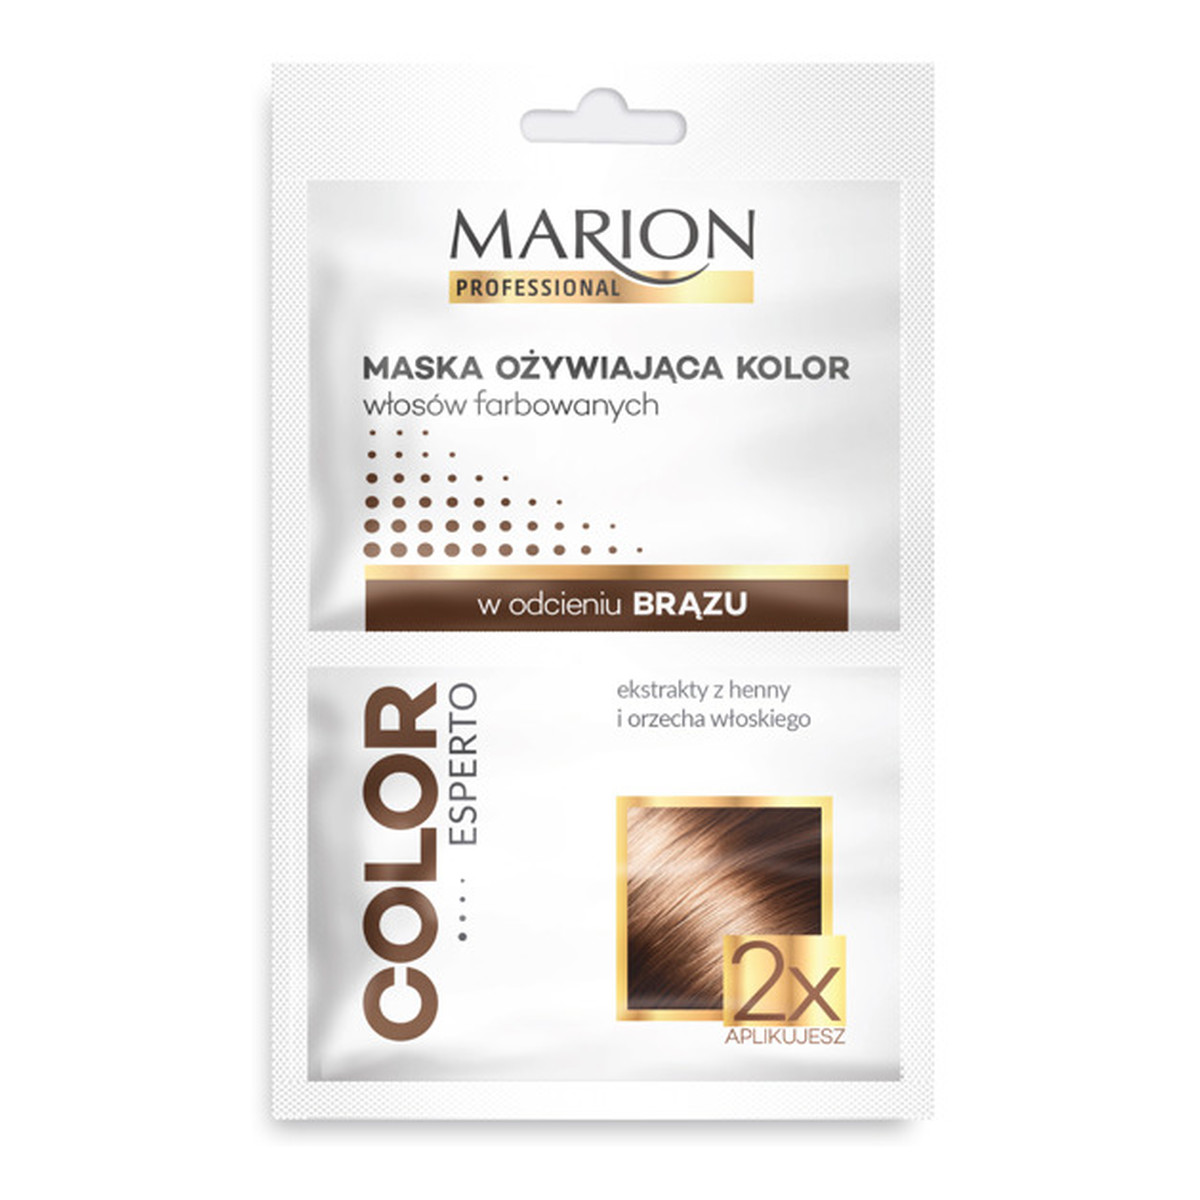 Marion Maxi Color Regenerująca Maska Ożywiająca Do Włosów Farbowanych w Odcieniu Brązu 2x20ml 40ml